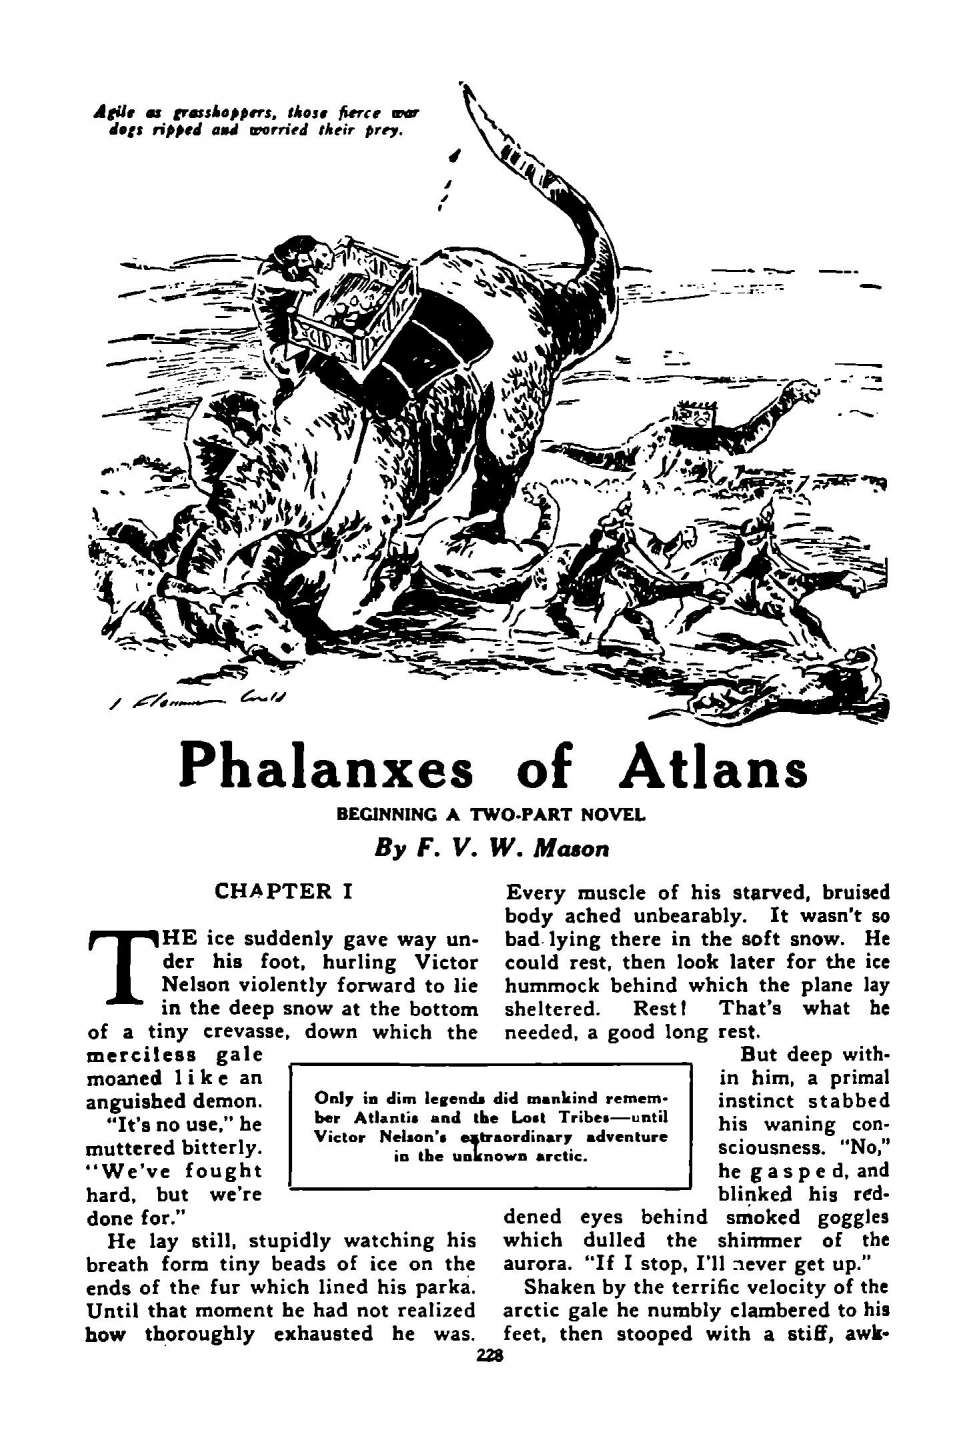 Book Cover For Astounding Serial - Phalanxes of Atlans - F V W Mason